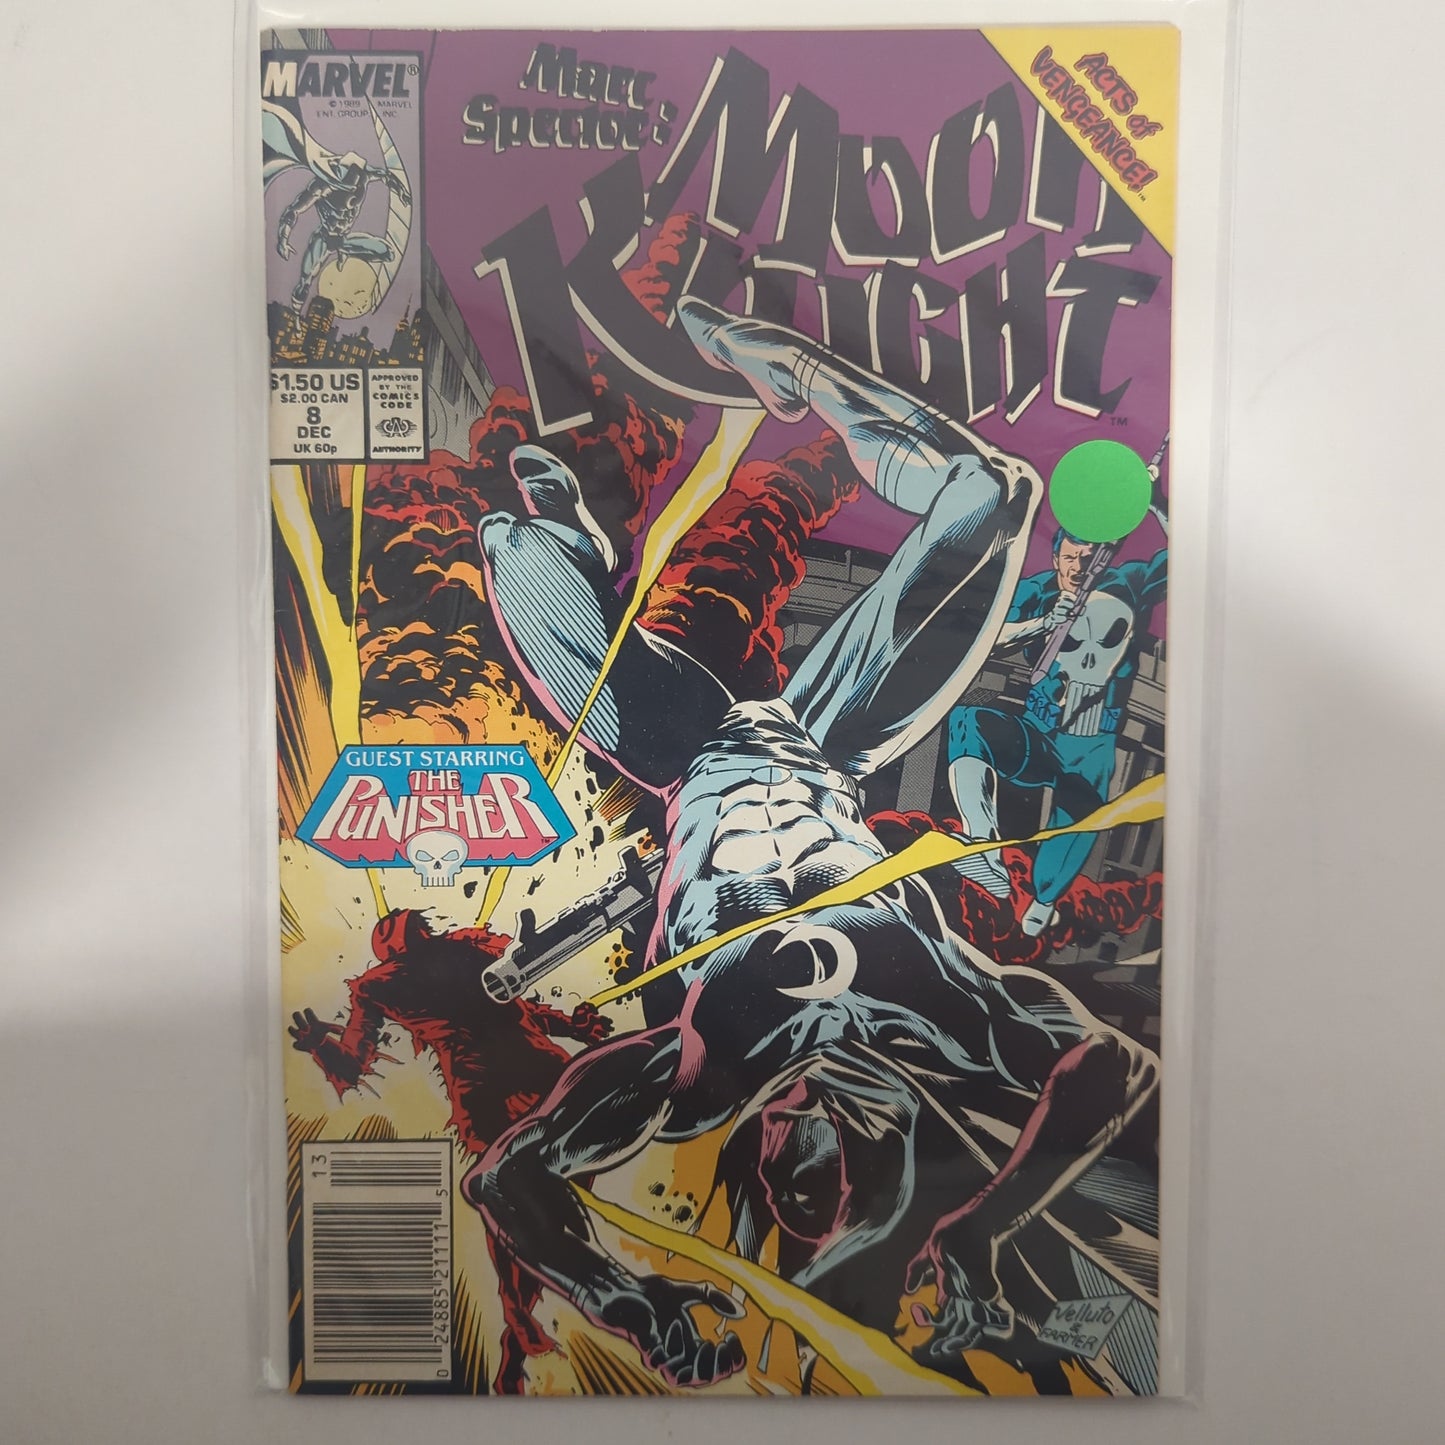 Moon Knight #8 Newsstand